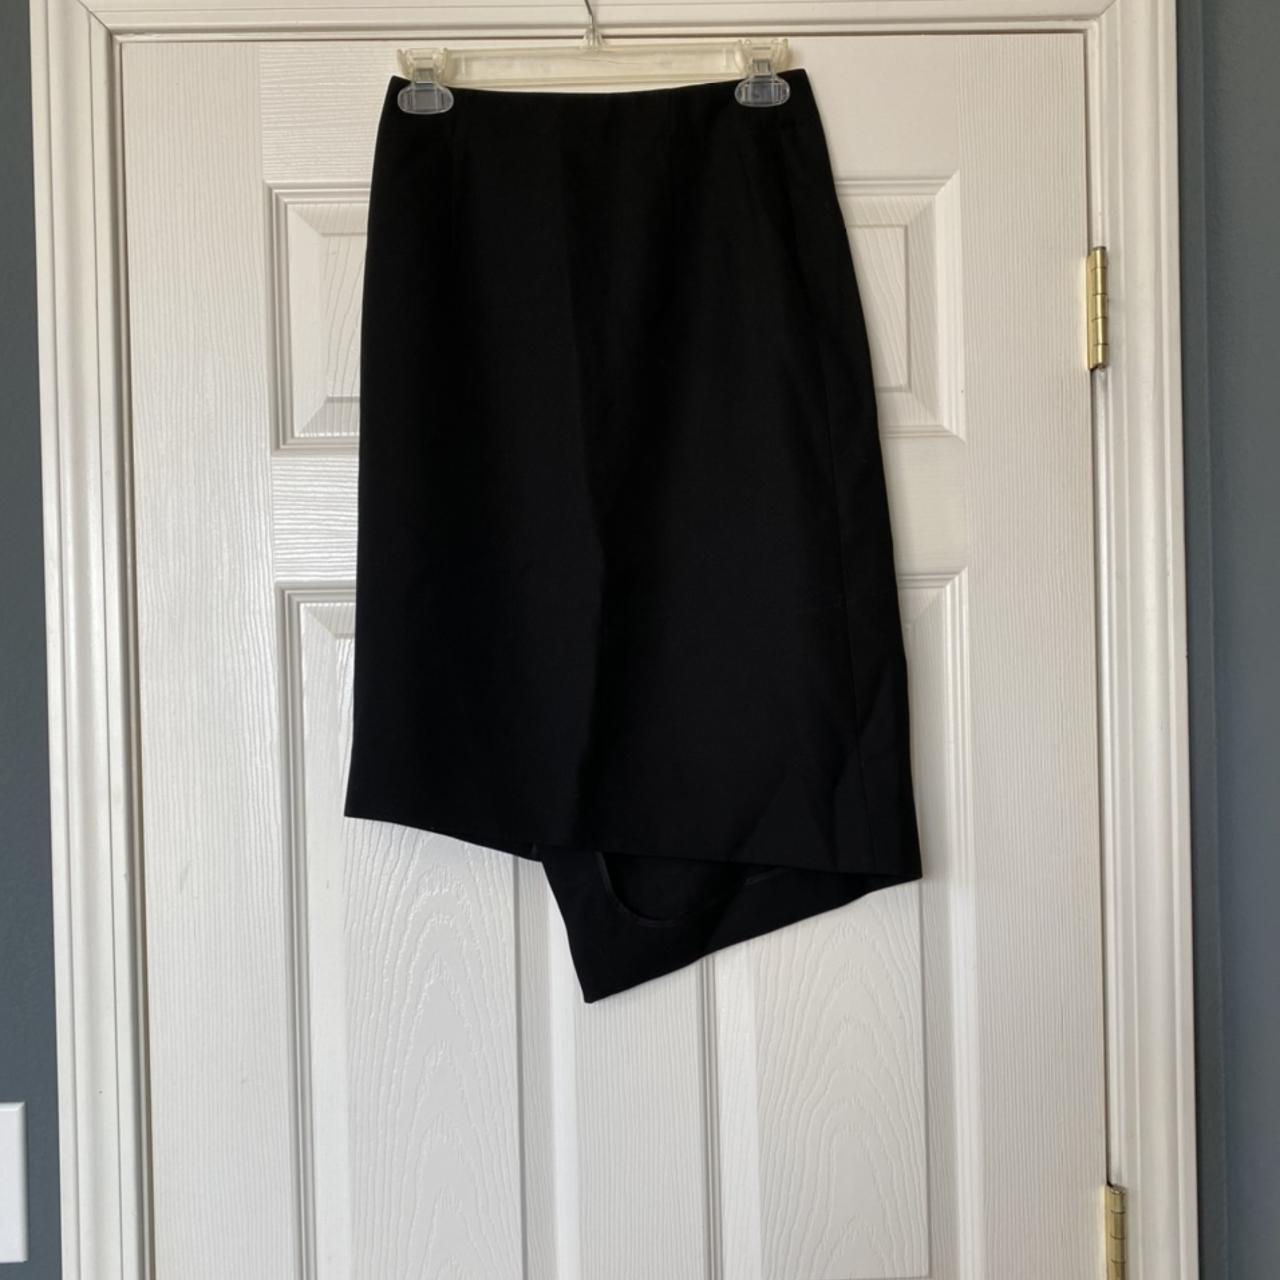 Hoish Struct W wrap skirt Color: Black Size: 34... - Depop